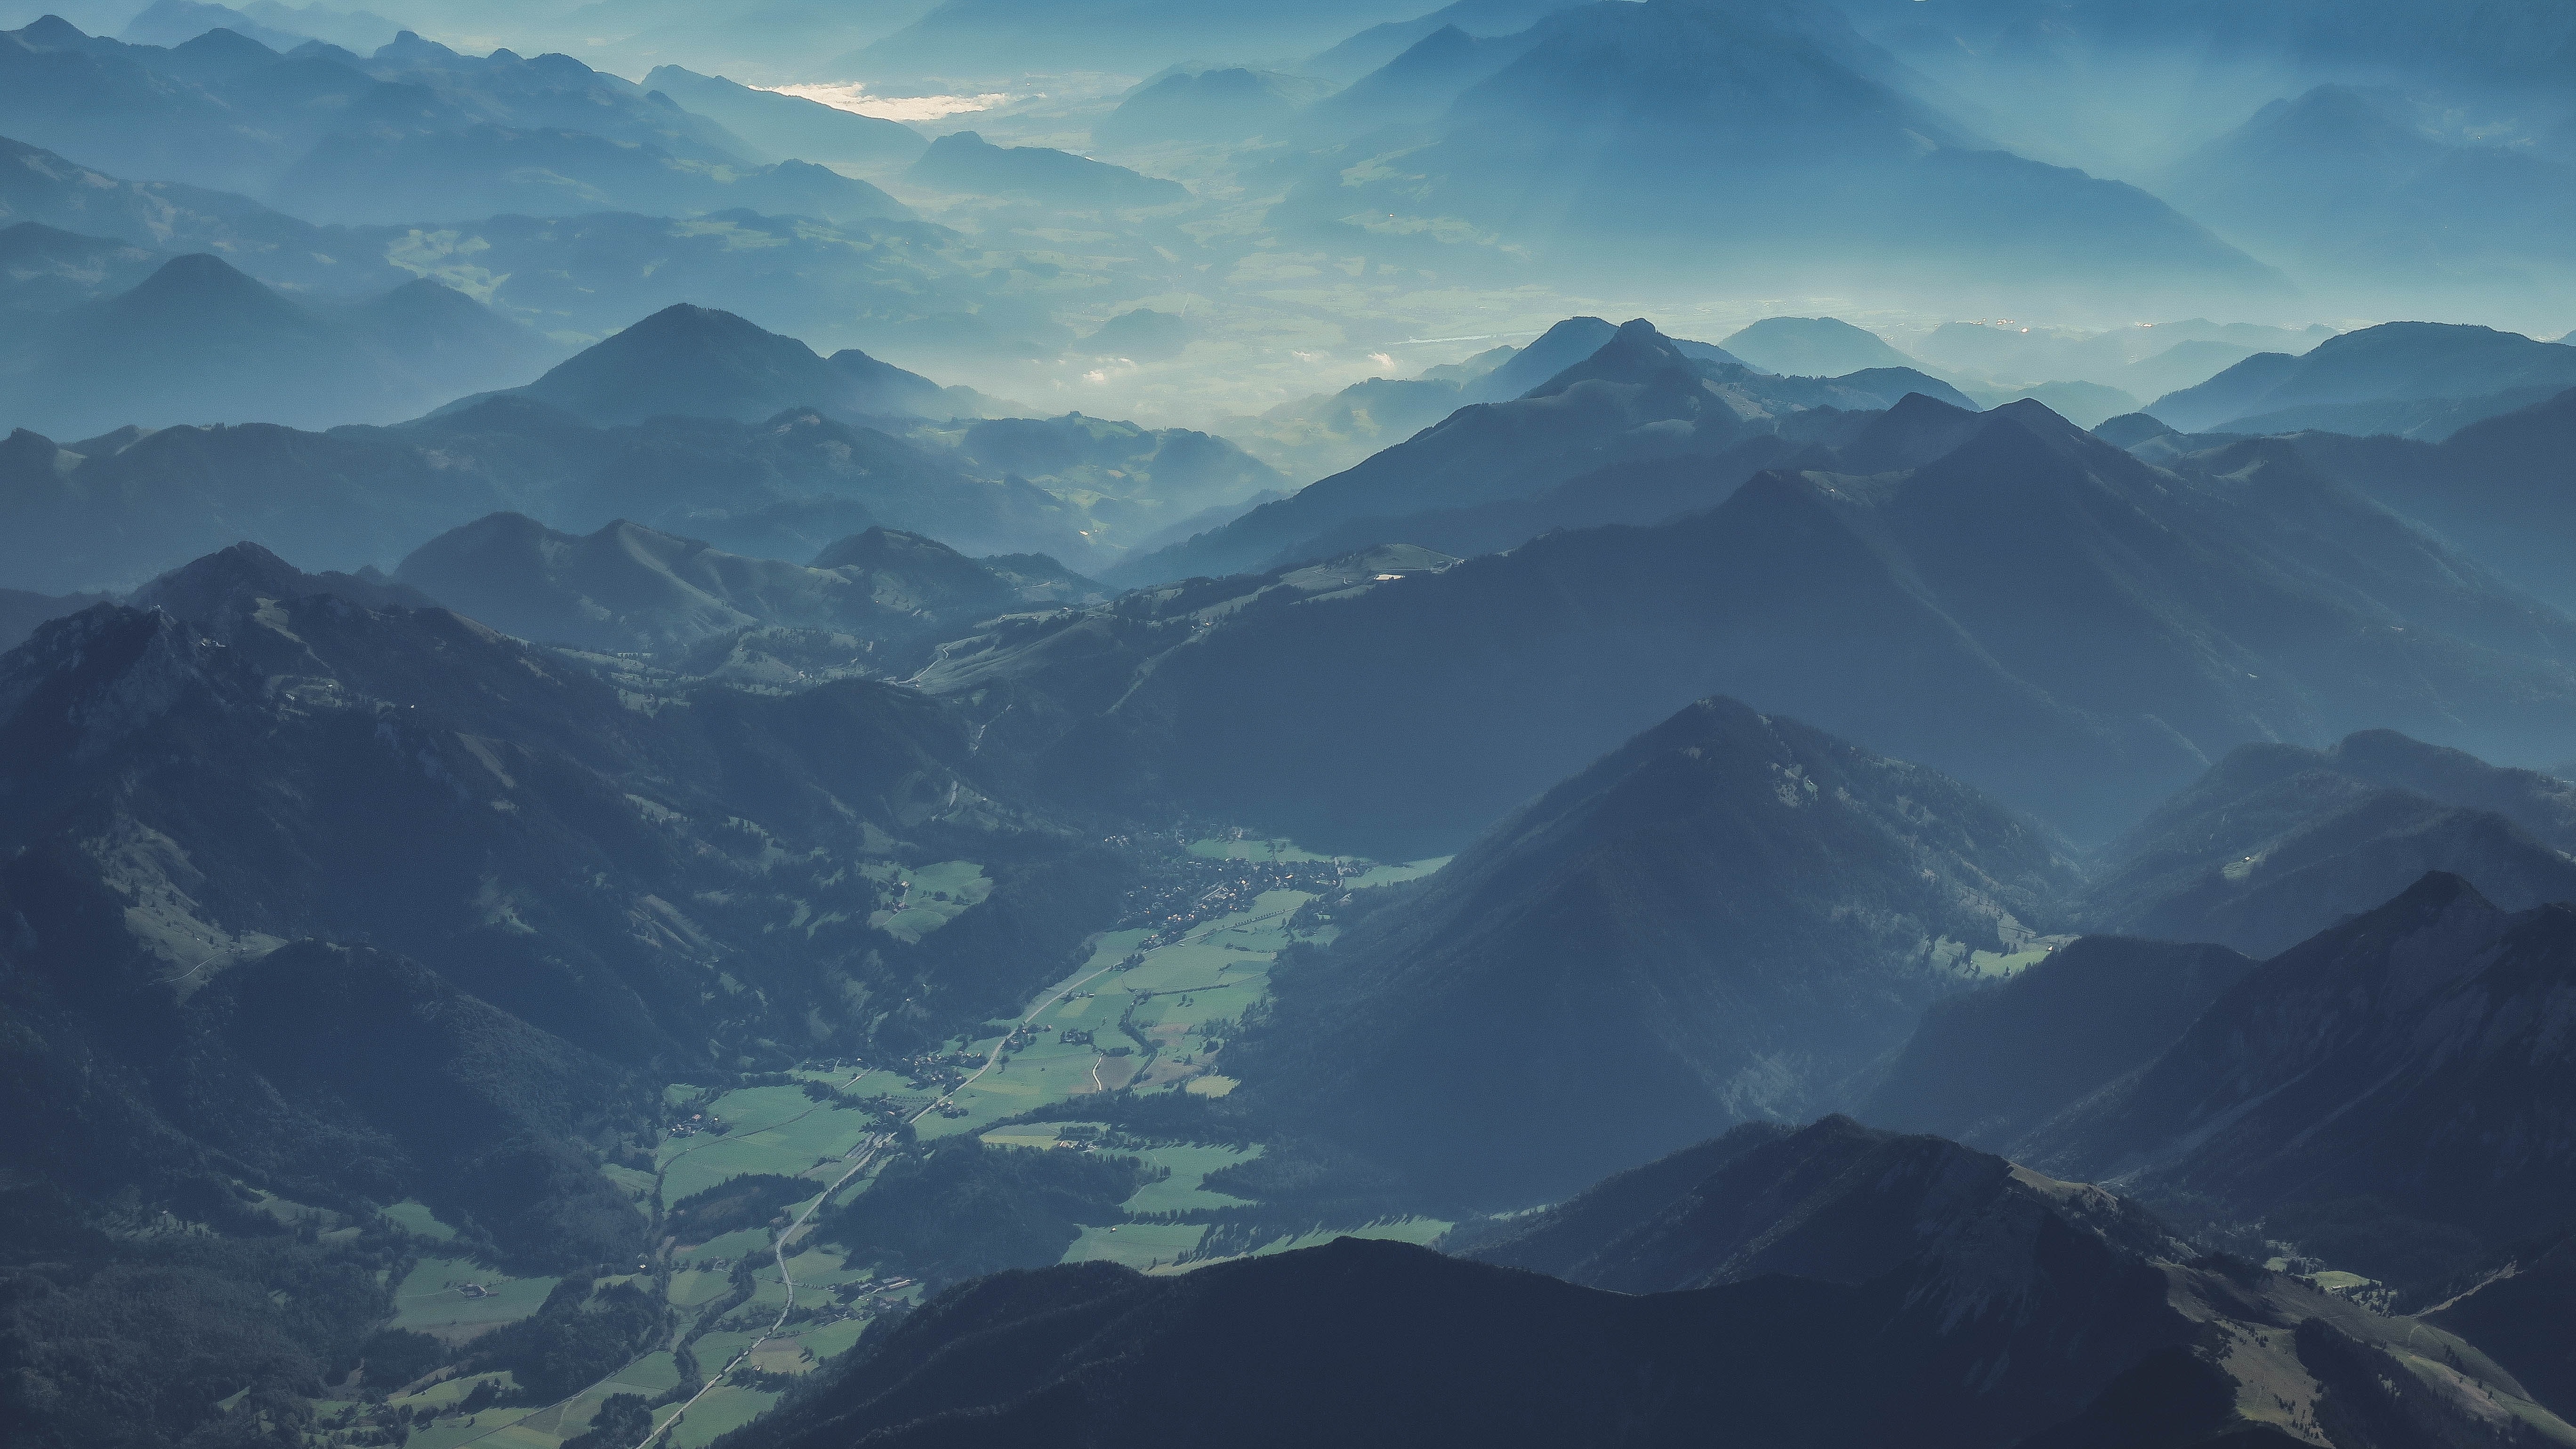 HD wallpaper, Mountain Range, Valley, 5K, Austria, Brandenberg Alps, Landscape, Mist, Aerial View